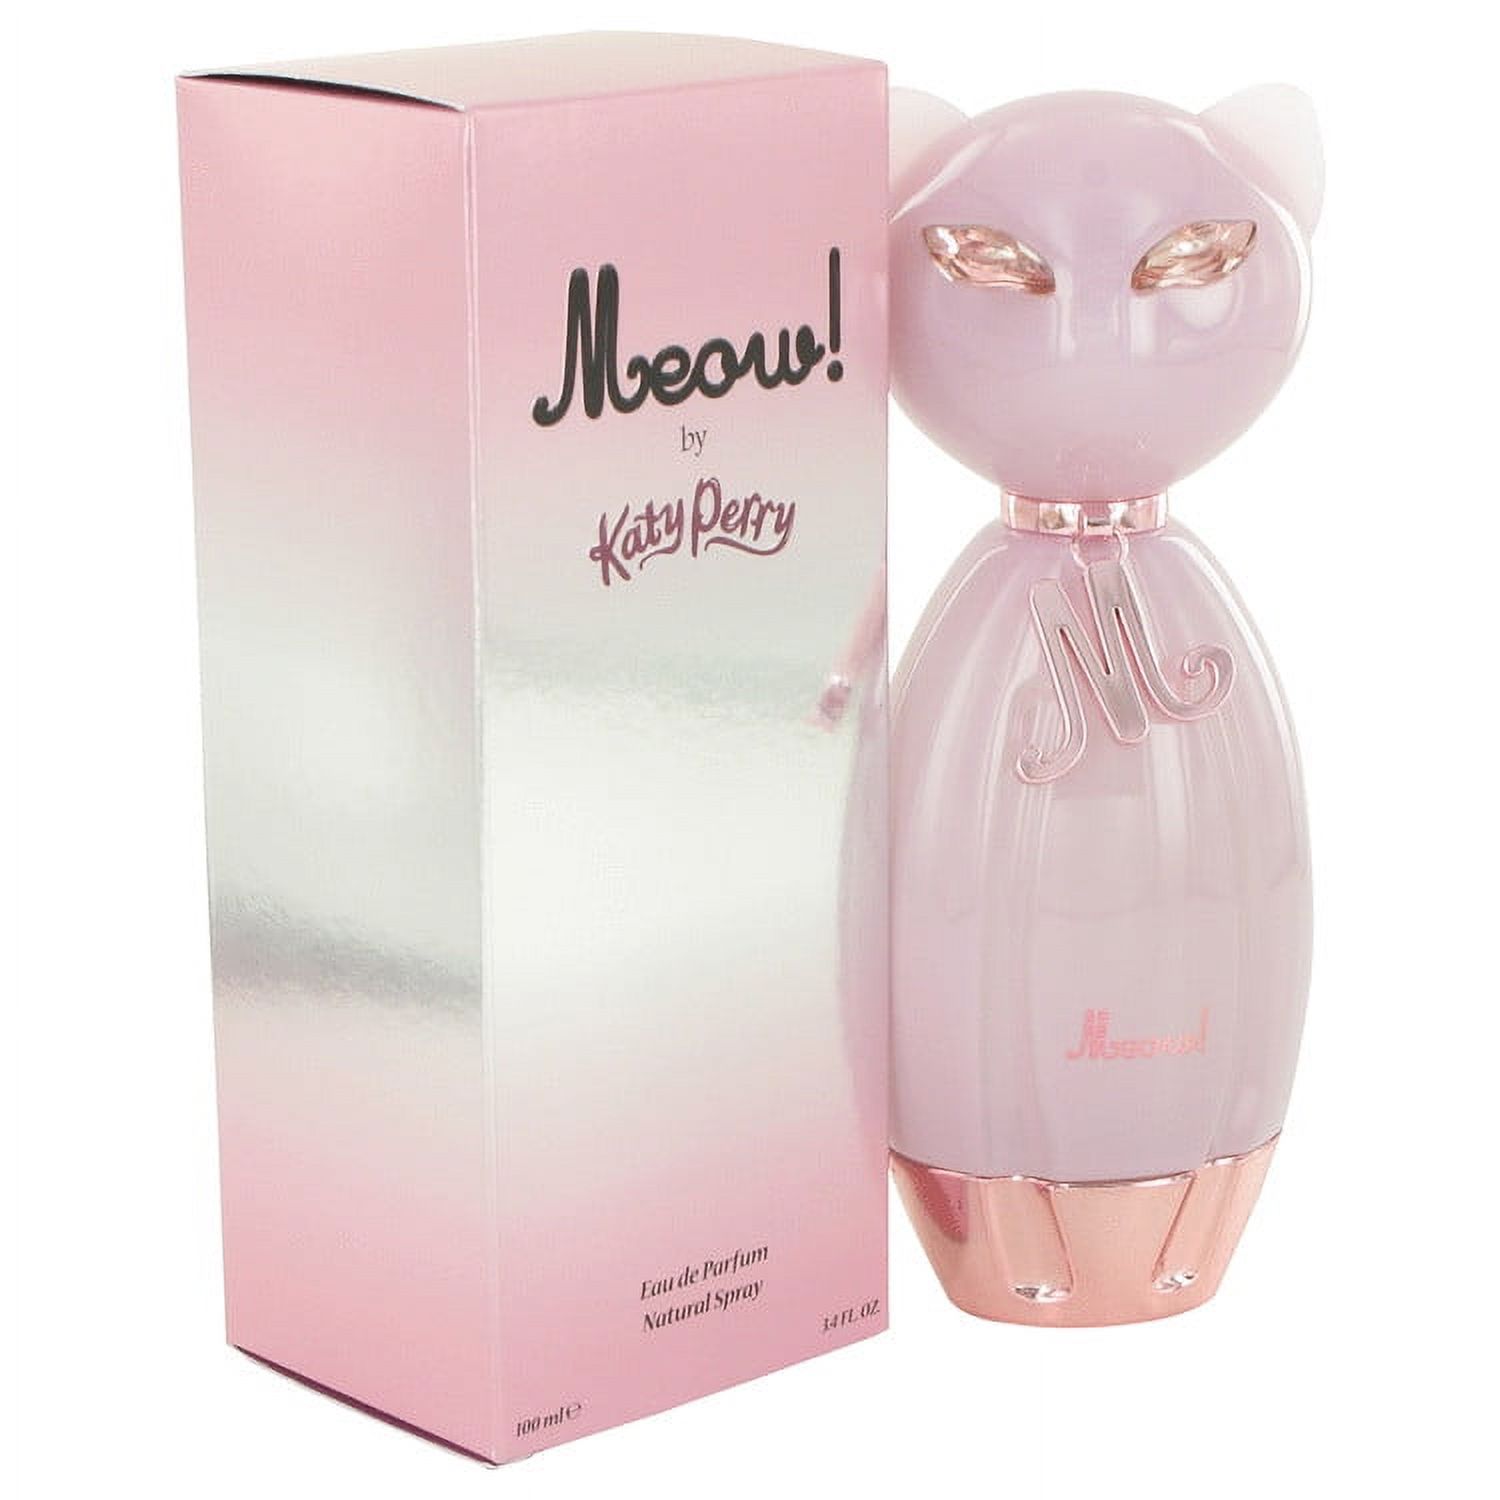 Katy Perry Meow Eau De Parfum Spray for Women 3.4 oz - image 1 of 4